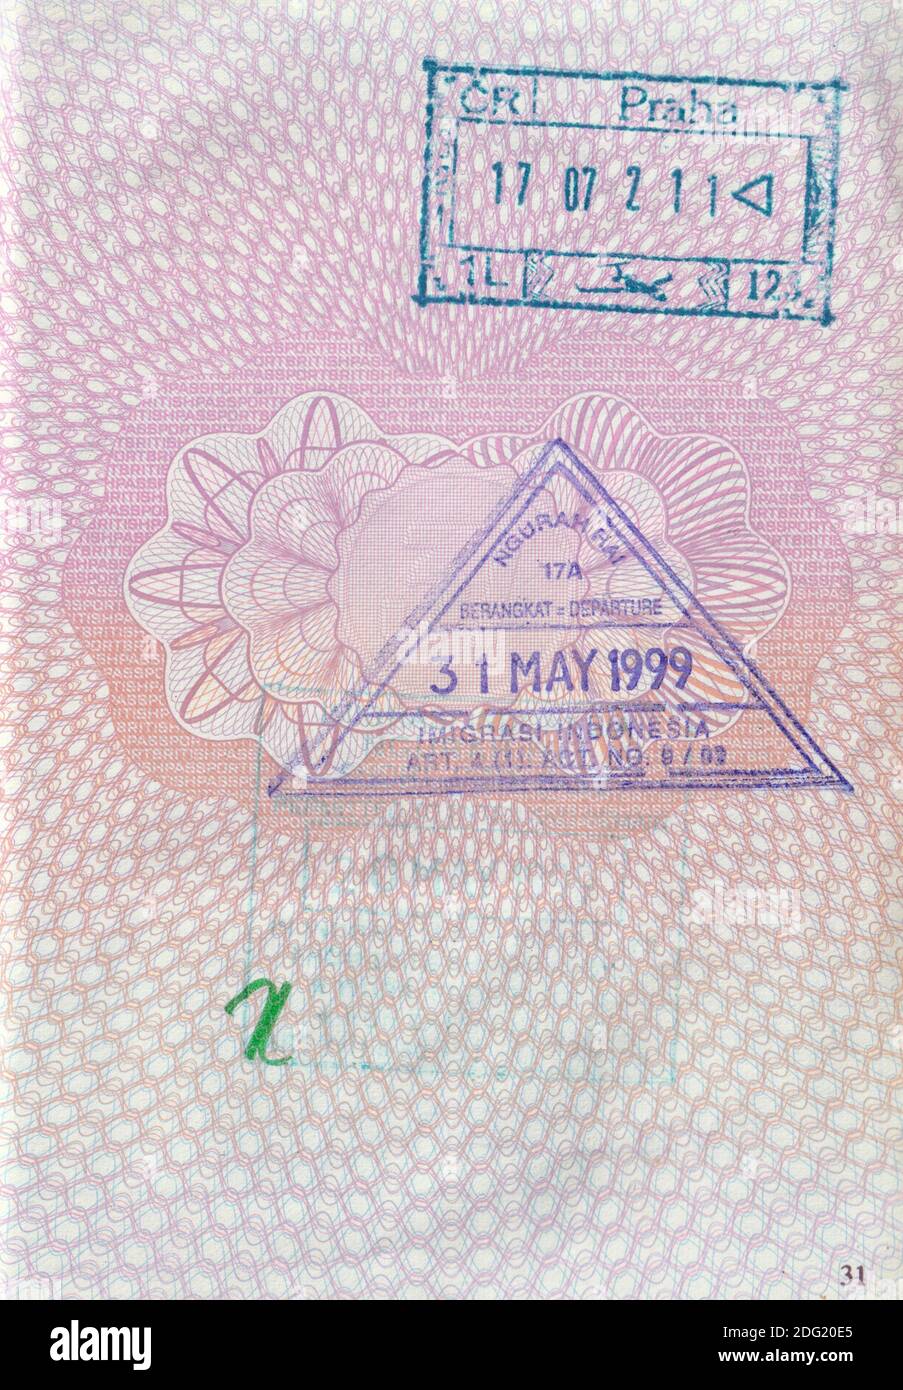 Page passeport Royaume-Uni avec 1999 timbres d'entrée/sortie Indonésie et 2002 Timbre de la République tchèque (aéroport de Prague) Banque D'Images